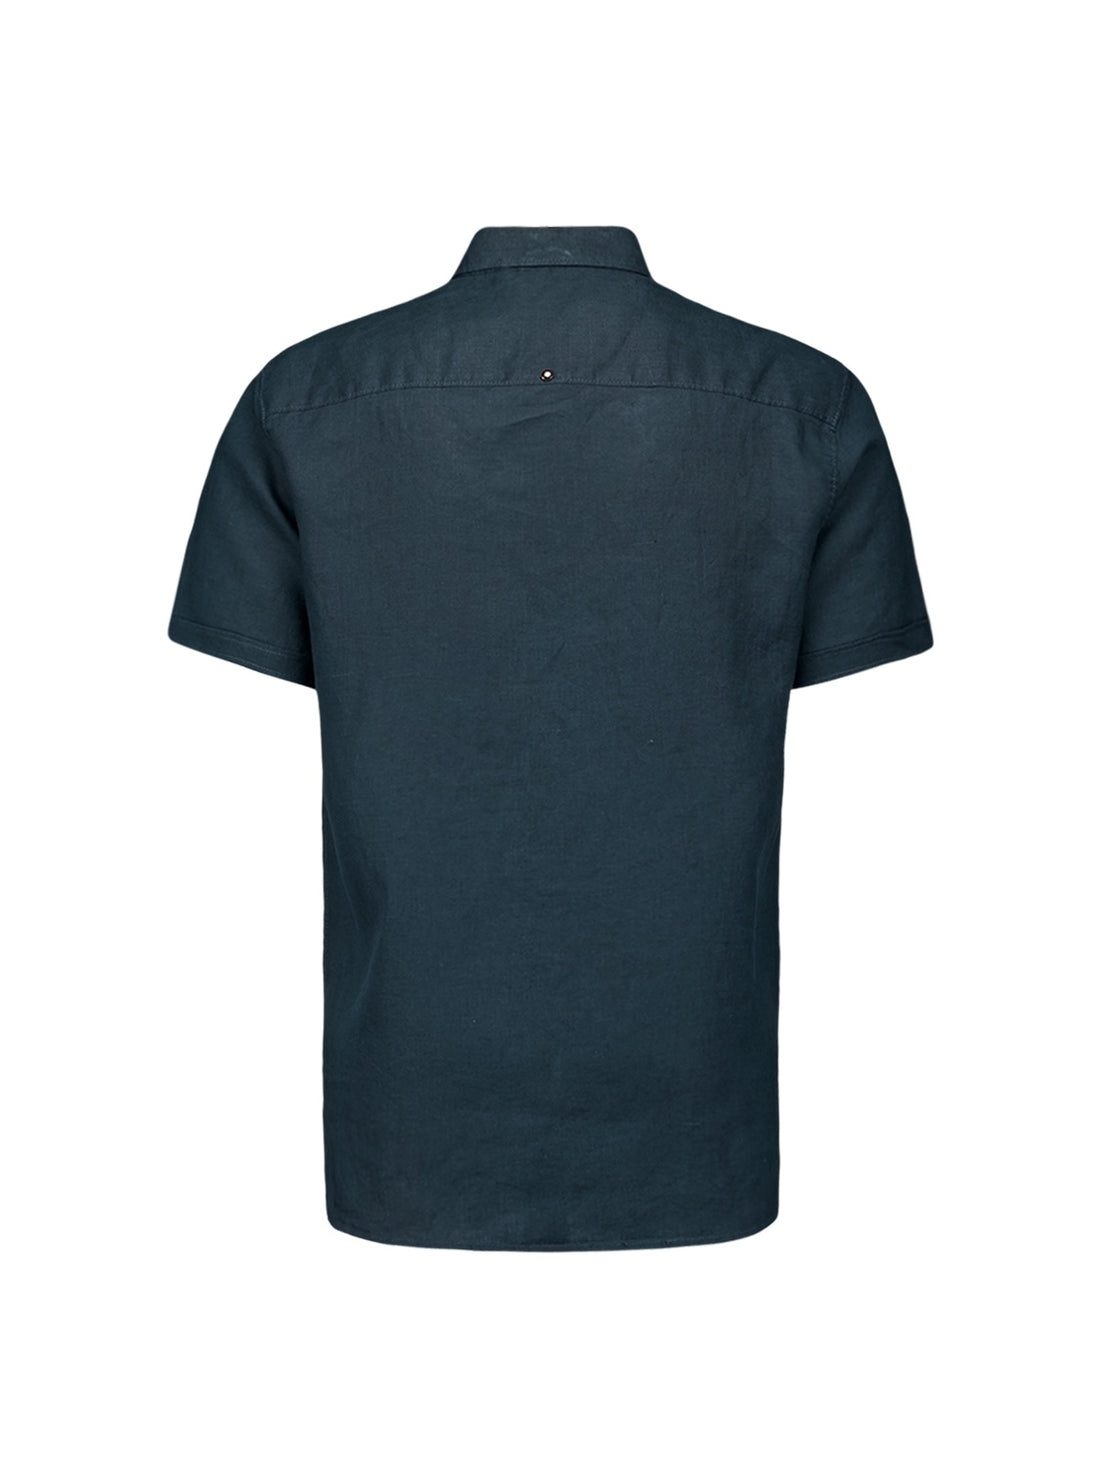 Overhemd korte mouw linnen - donkerblauw